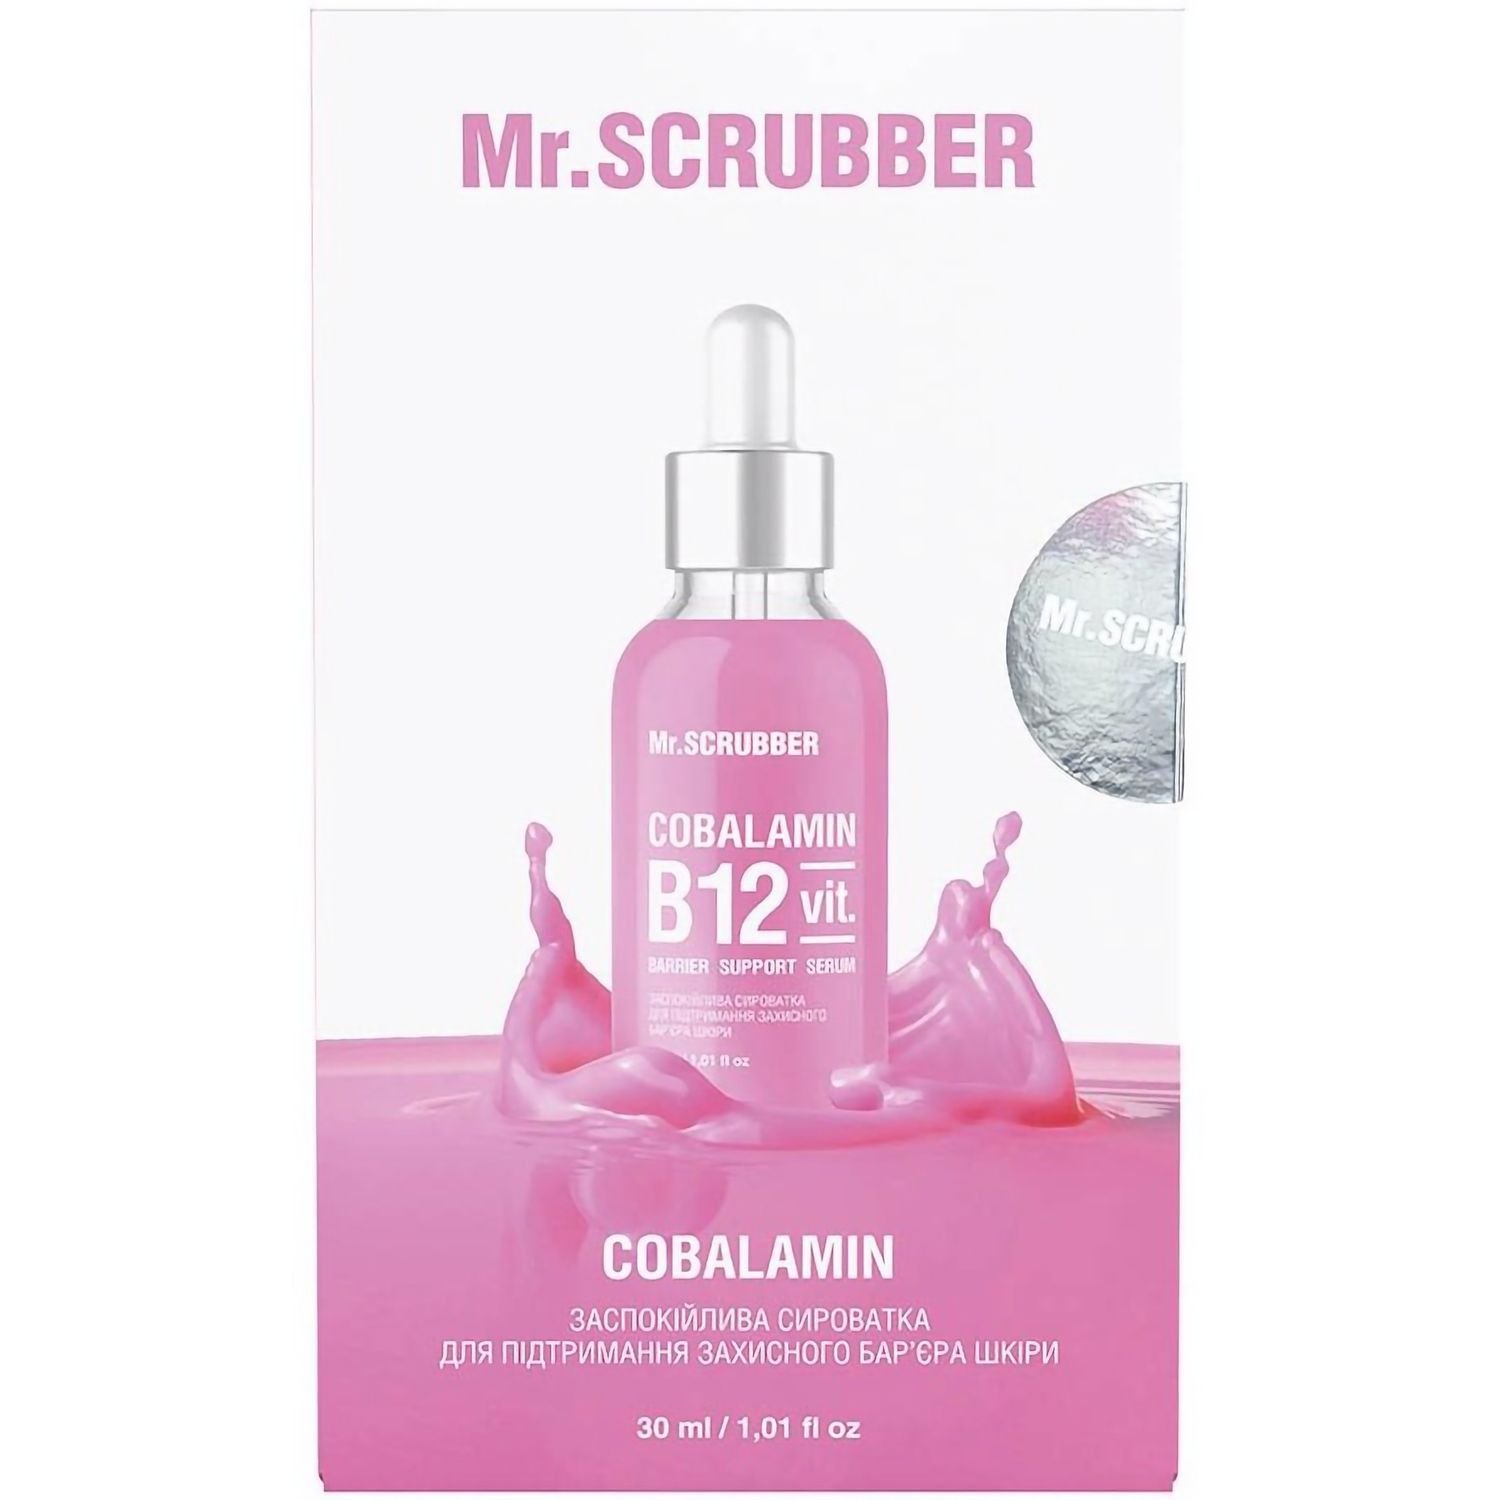 Успокаивающая сыворотка Mr.Scrubber Cobalamin B12 для поддержания защитного барьера кожи лица 30 мл - фото 3